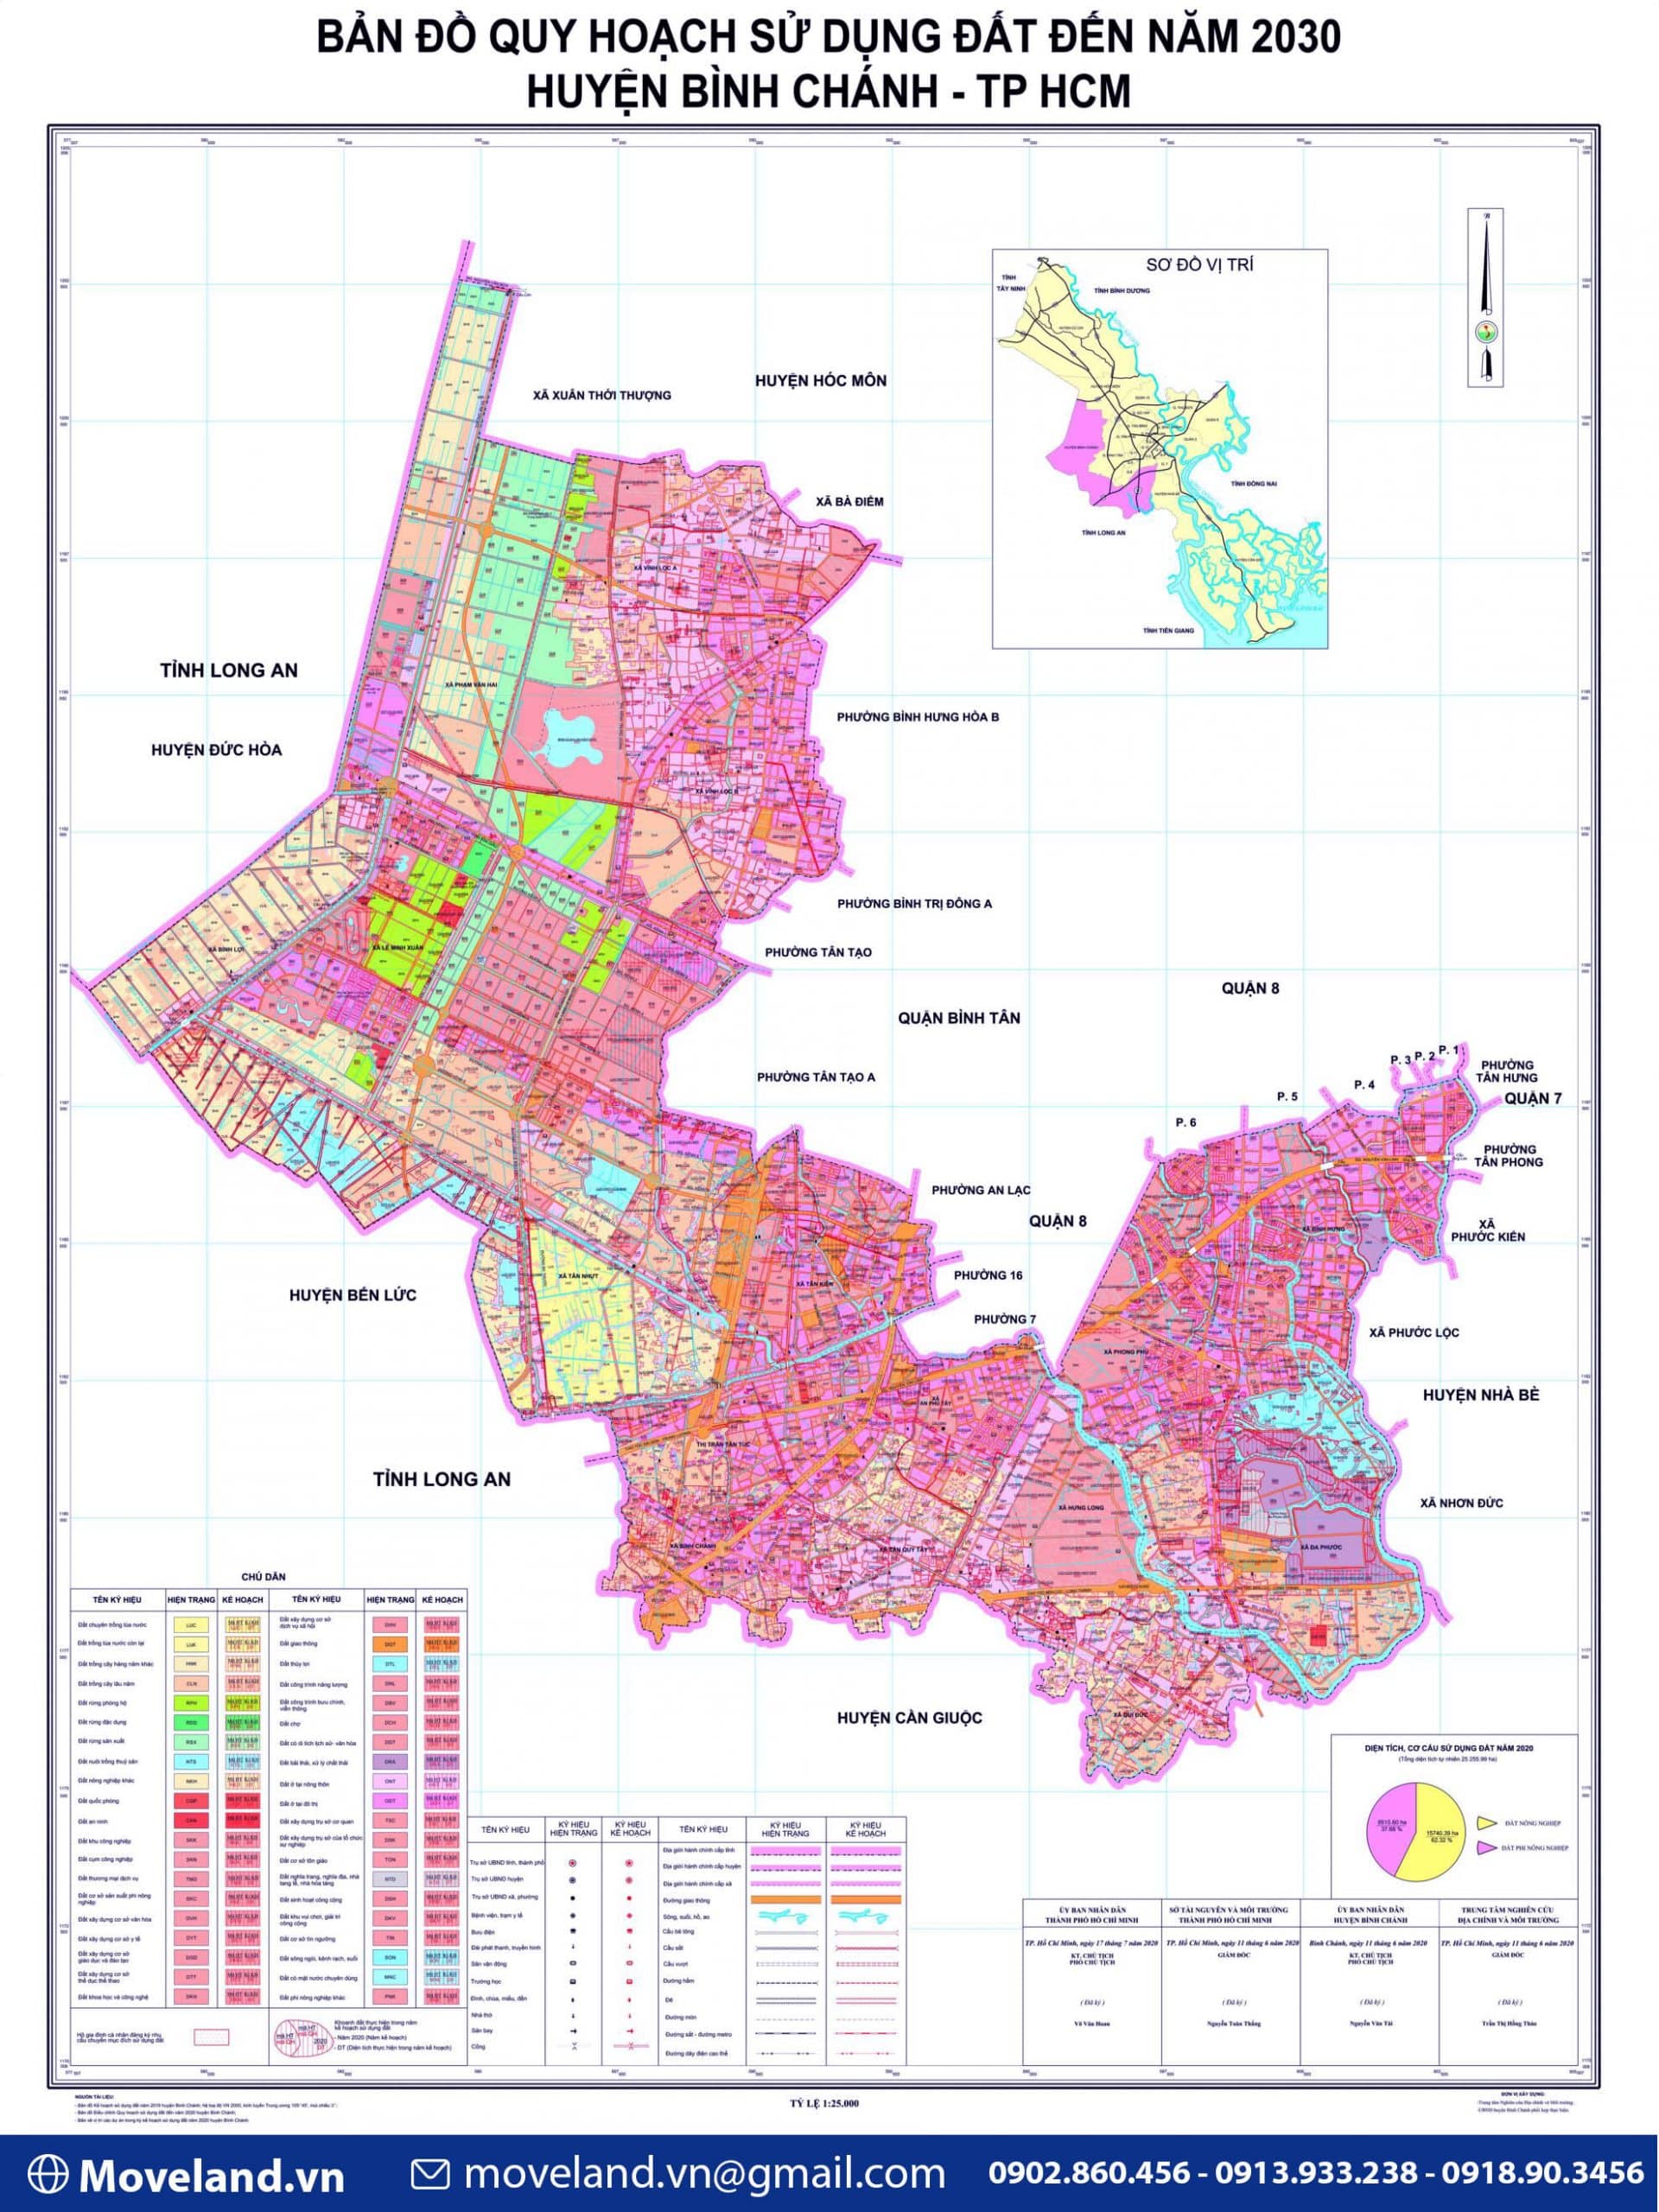 Huyện Bình Chánh trên bản đồ hành chính TP.HCM